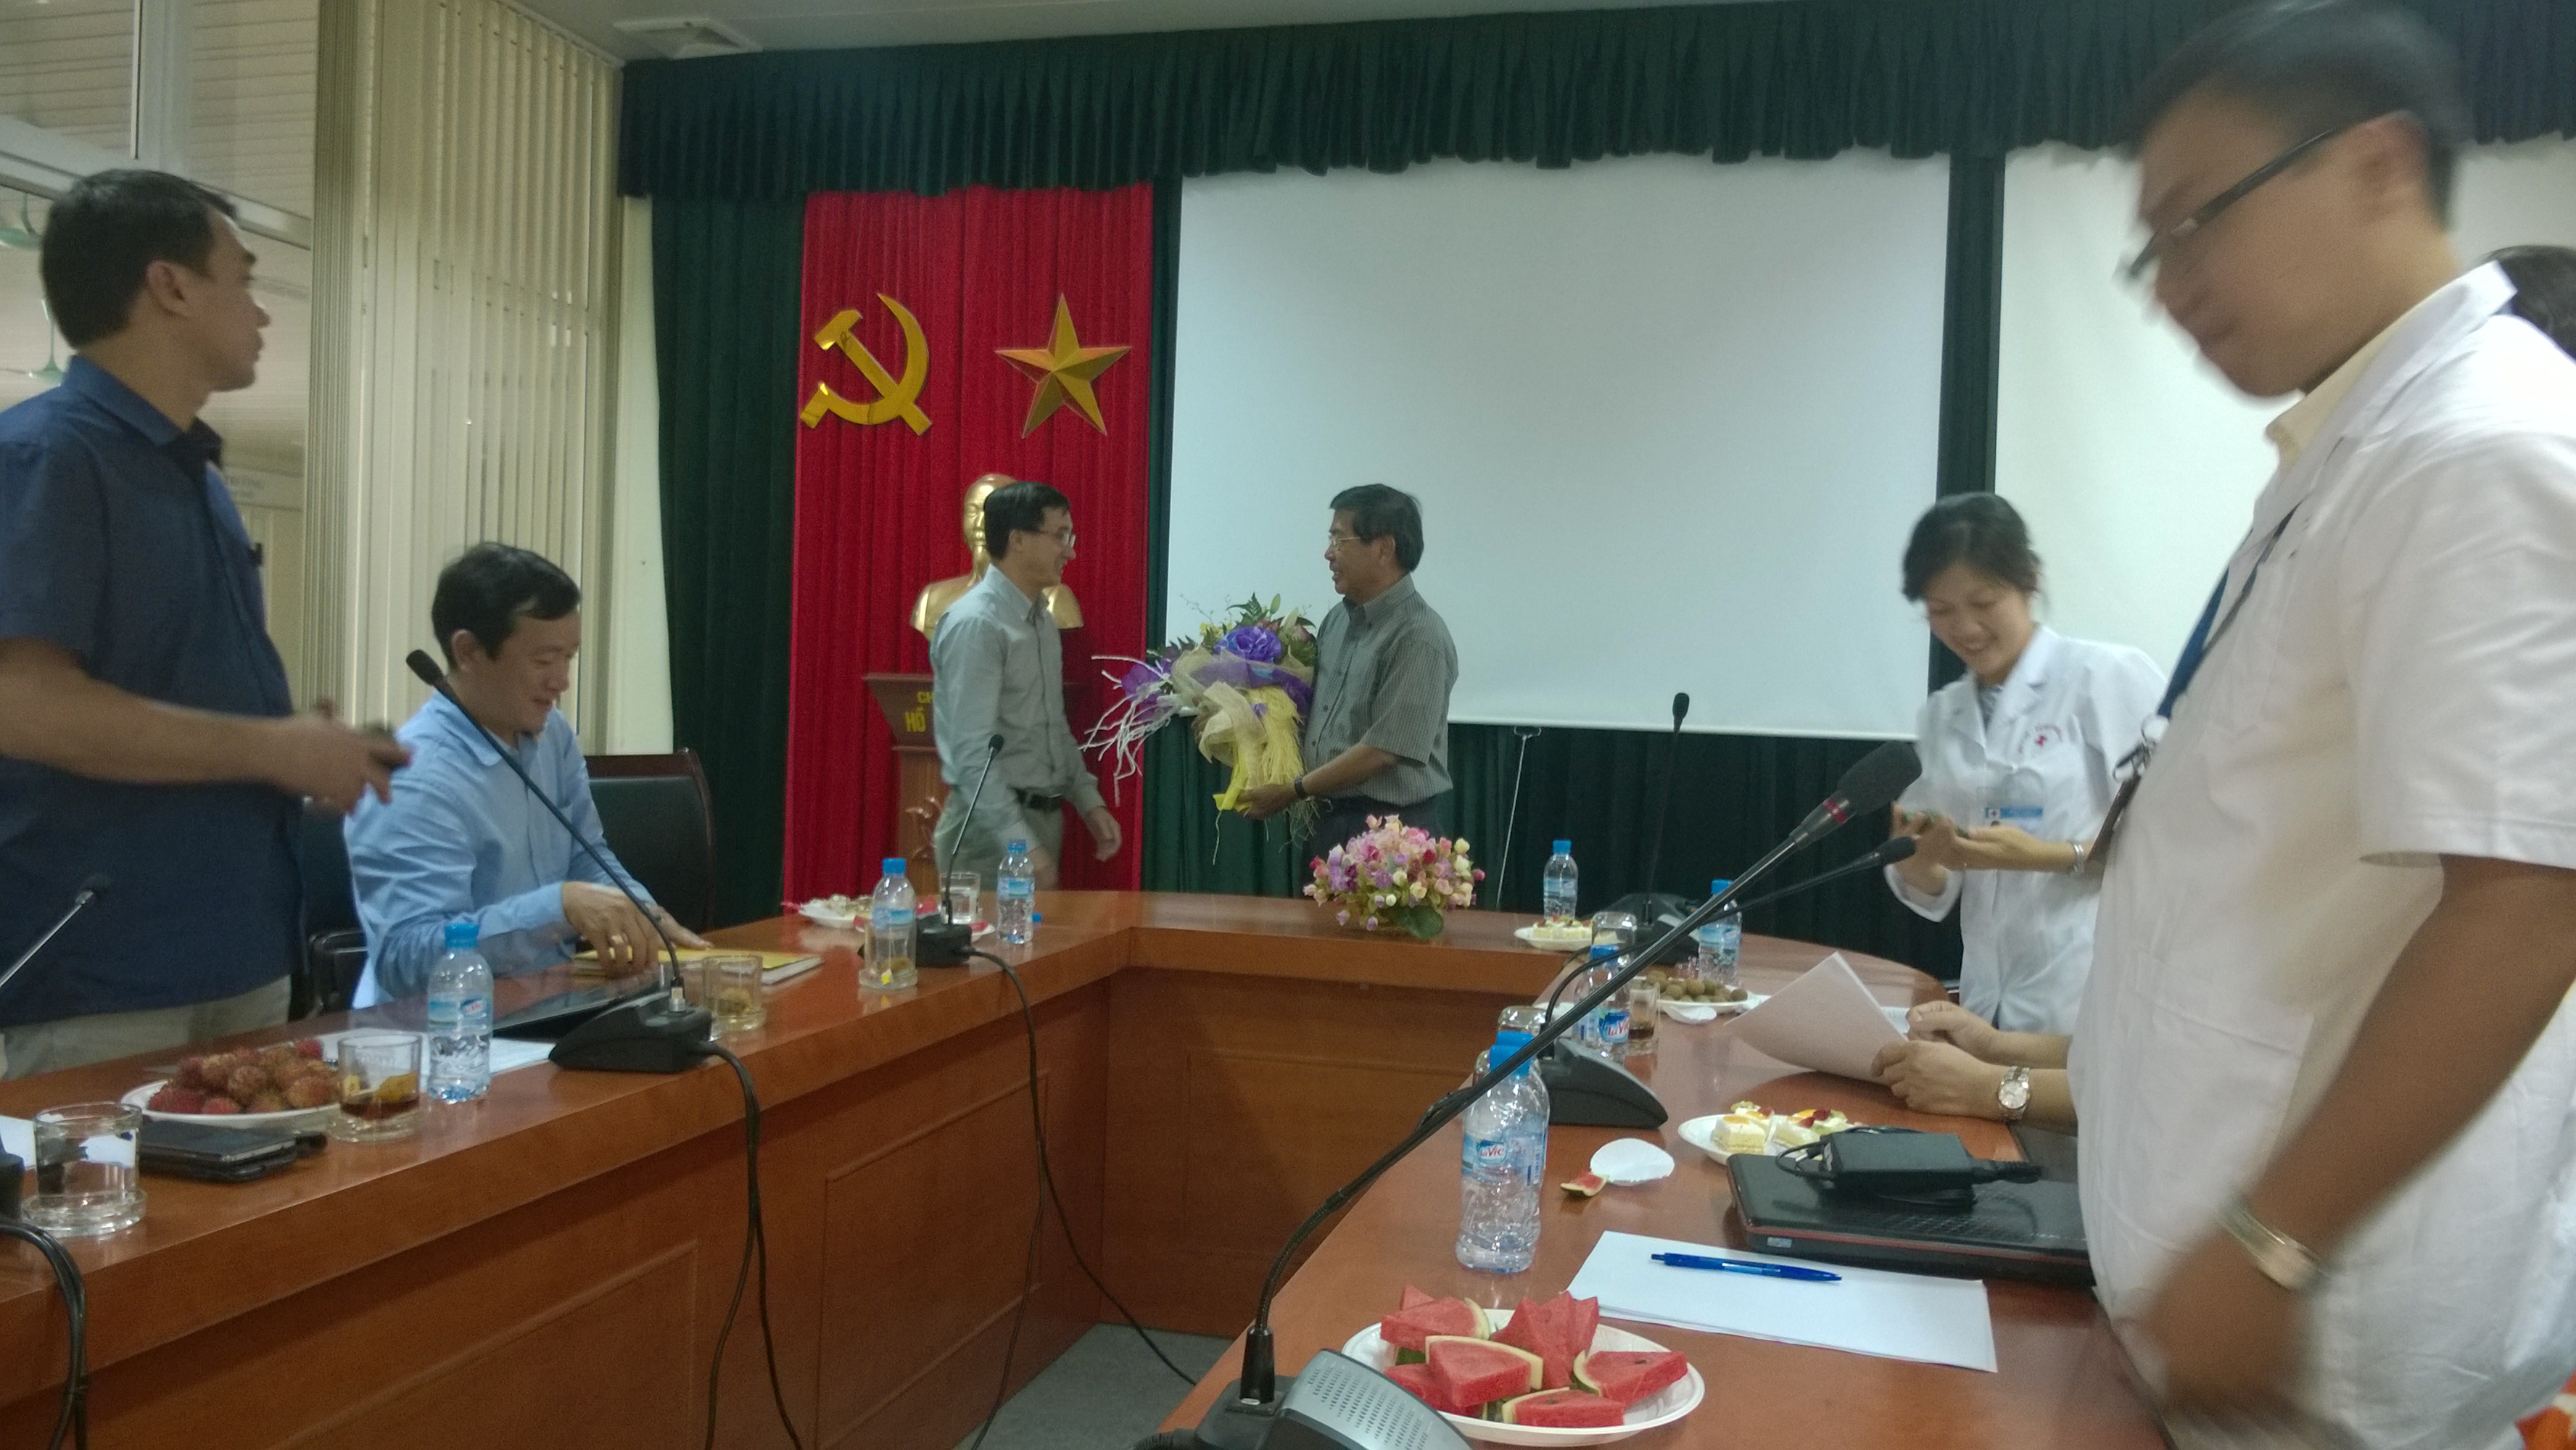 Chuyển giao bản quyền công nghệ sản xuất LUNASIN từ Mỹ về Việt Nam